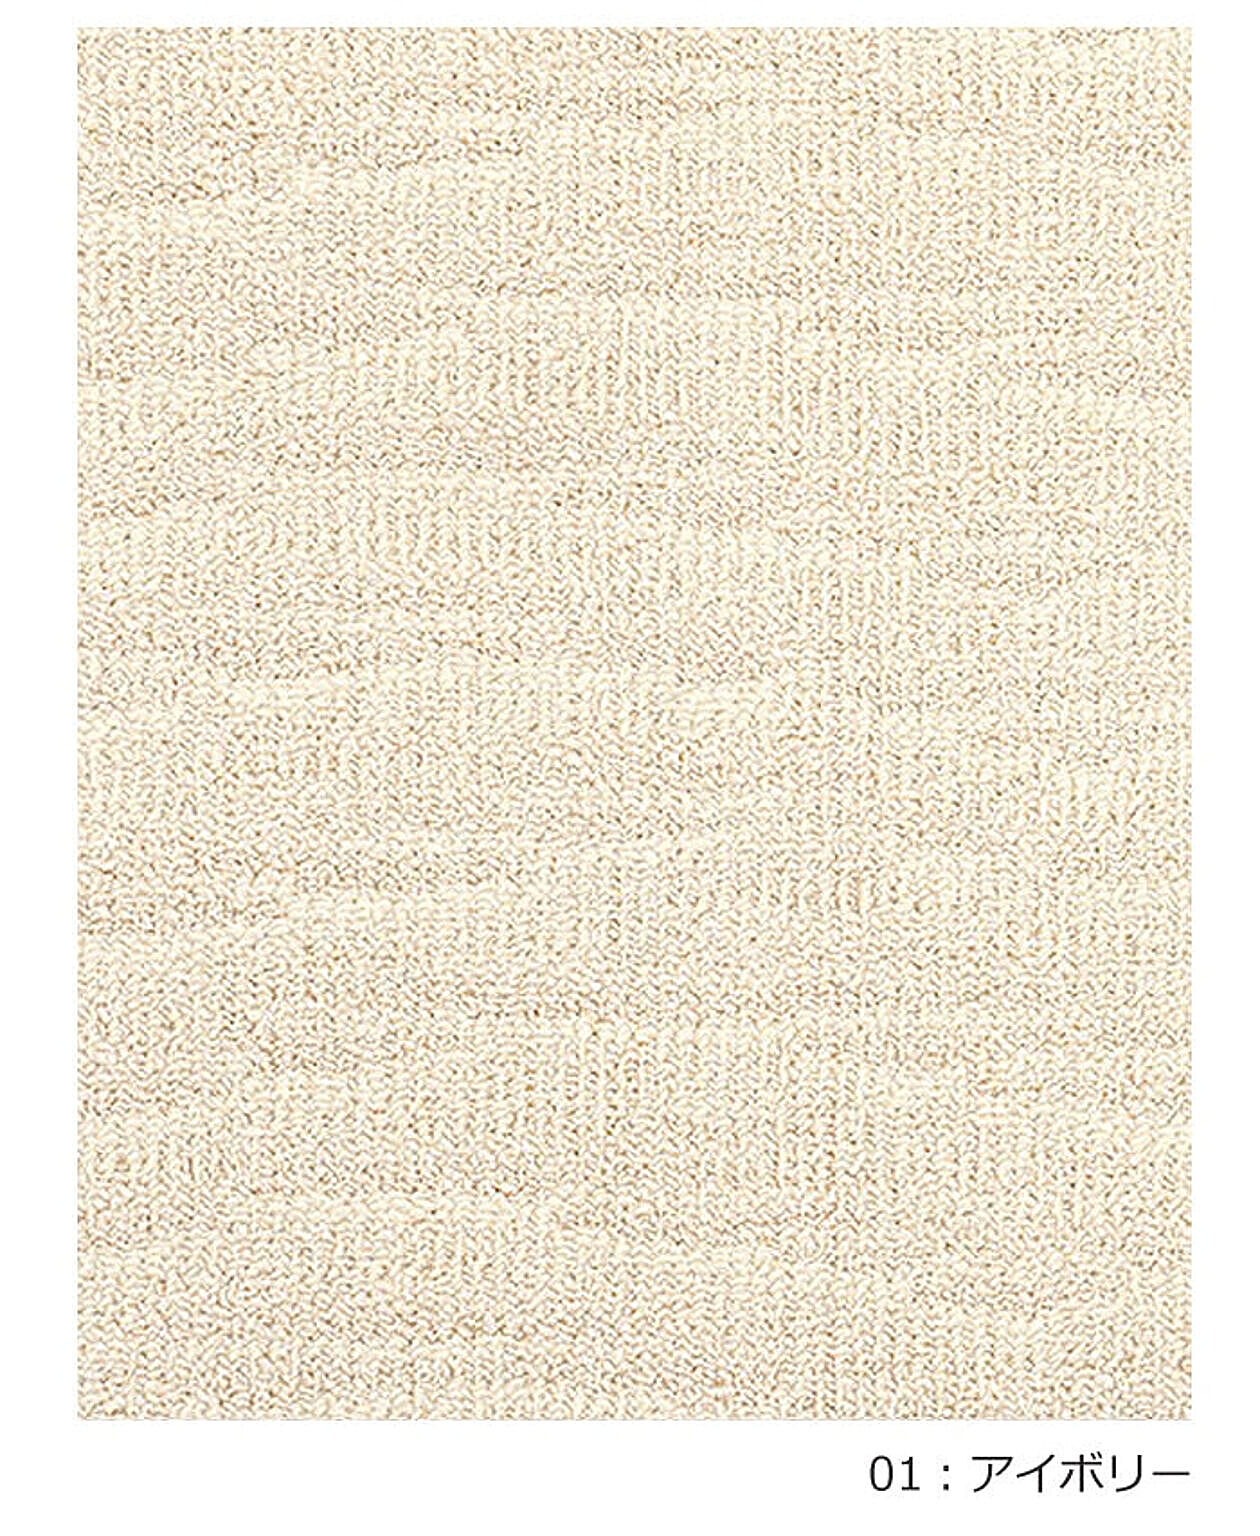 ラグ ラグマット 絨毯 日本製 カーペット 北欧 デザイン 防ダニ 抗菌 prevell プレーベル ポート 江戸間4.5畳 約261×261cm 4畳半 4.5帖 四畳半 引っ越し 新生活